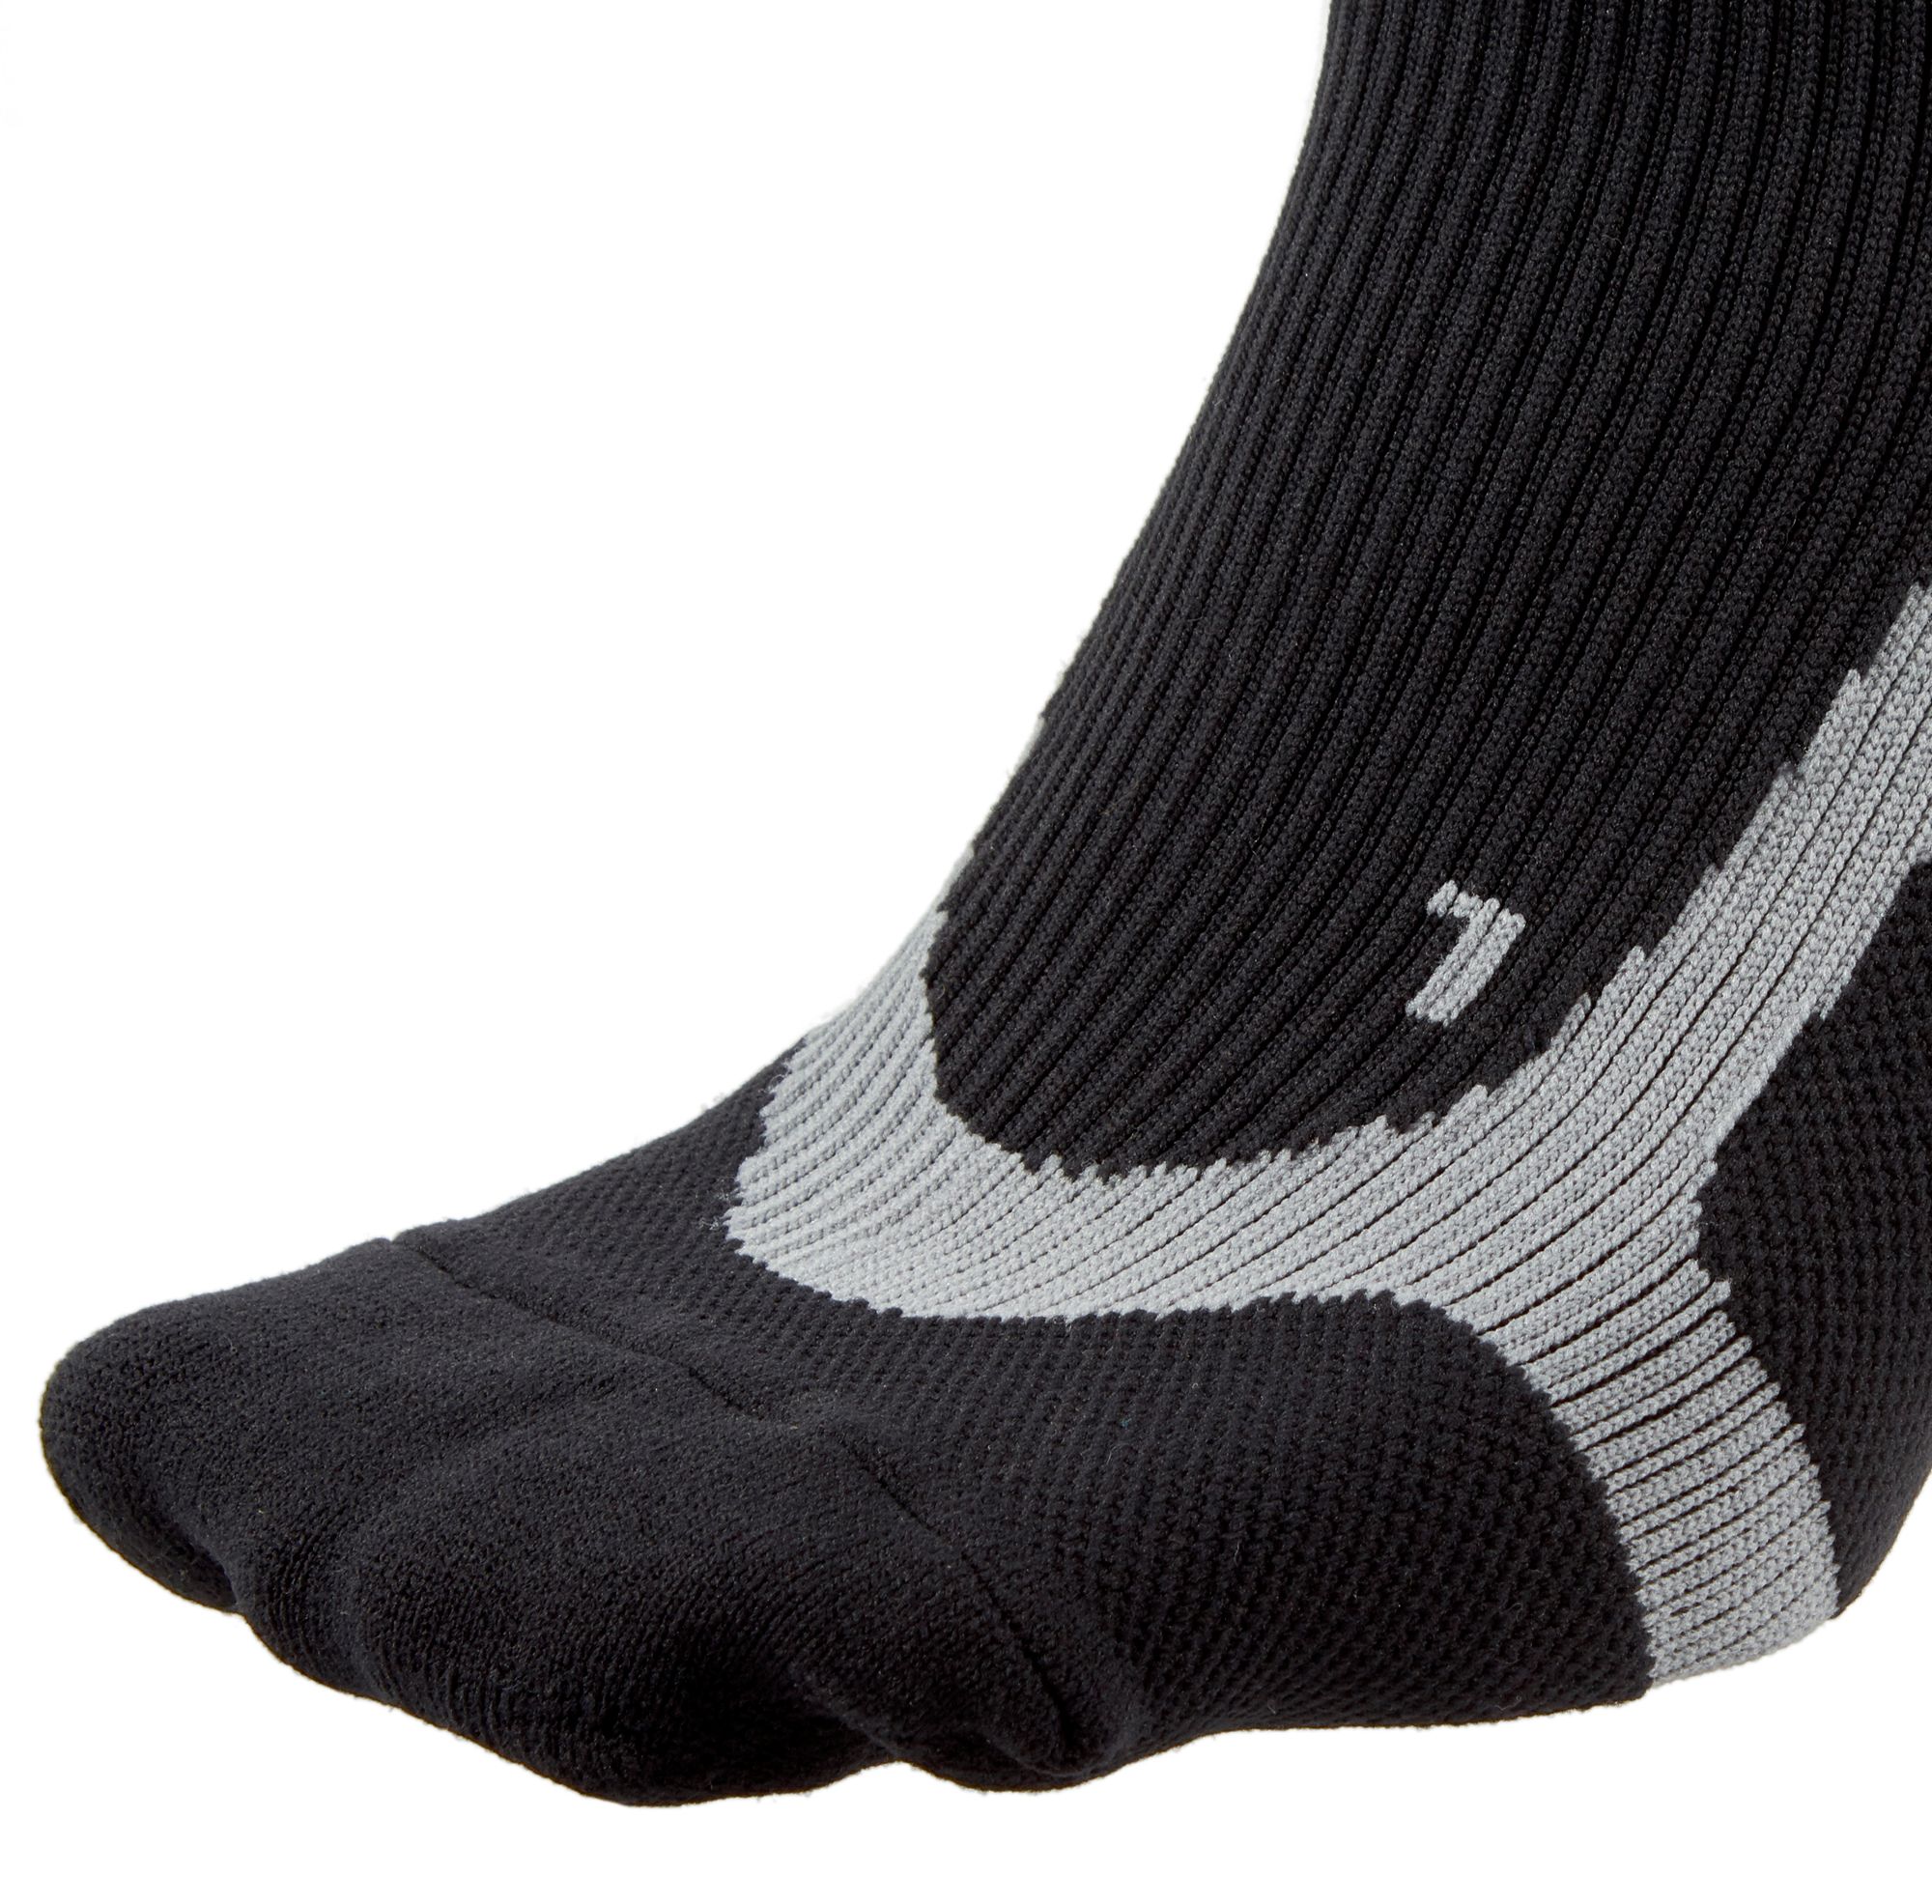 P-Tex Pro Knit Compression Socks - Big Apple Buddy